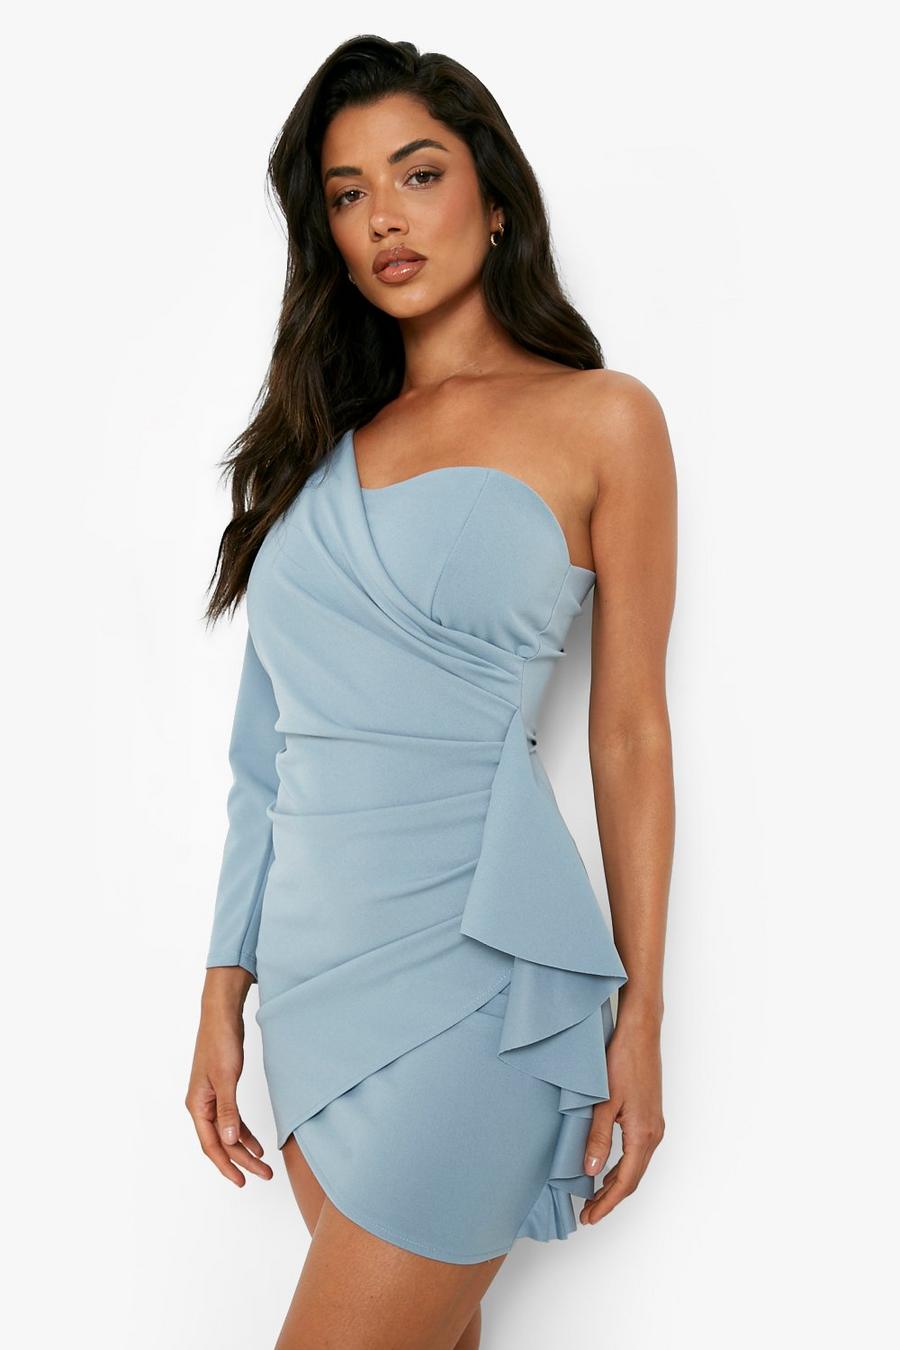 Light blue שמלת מיני בסגנון וילון עם שרוול אחד